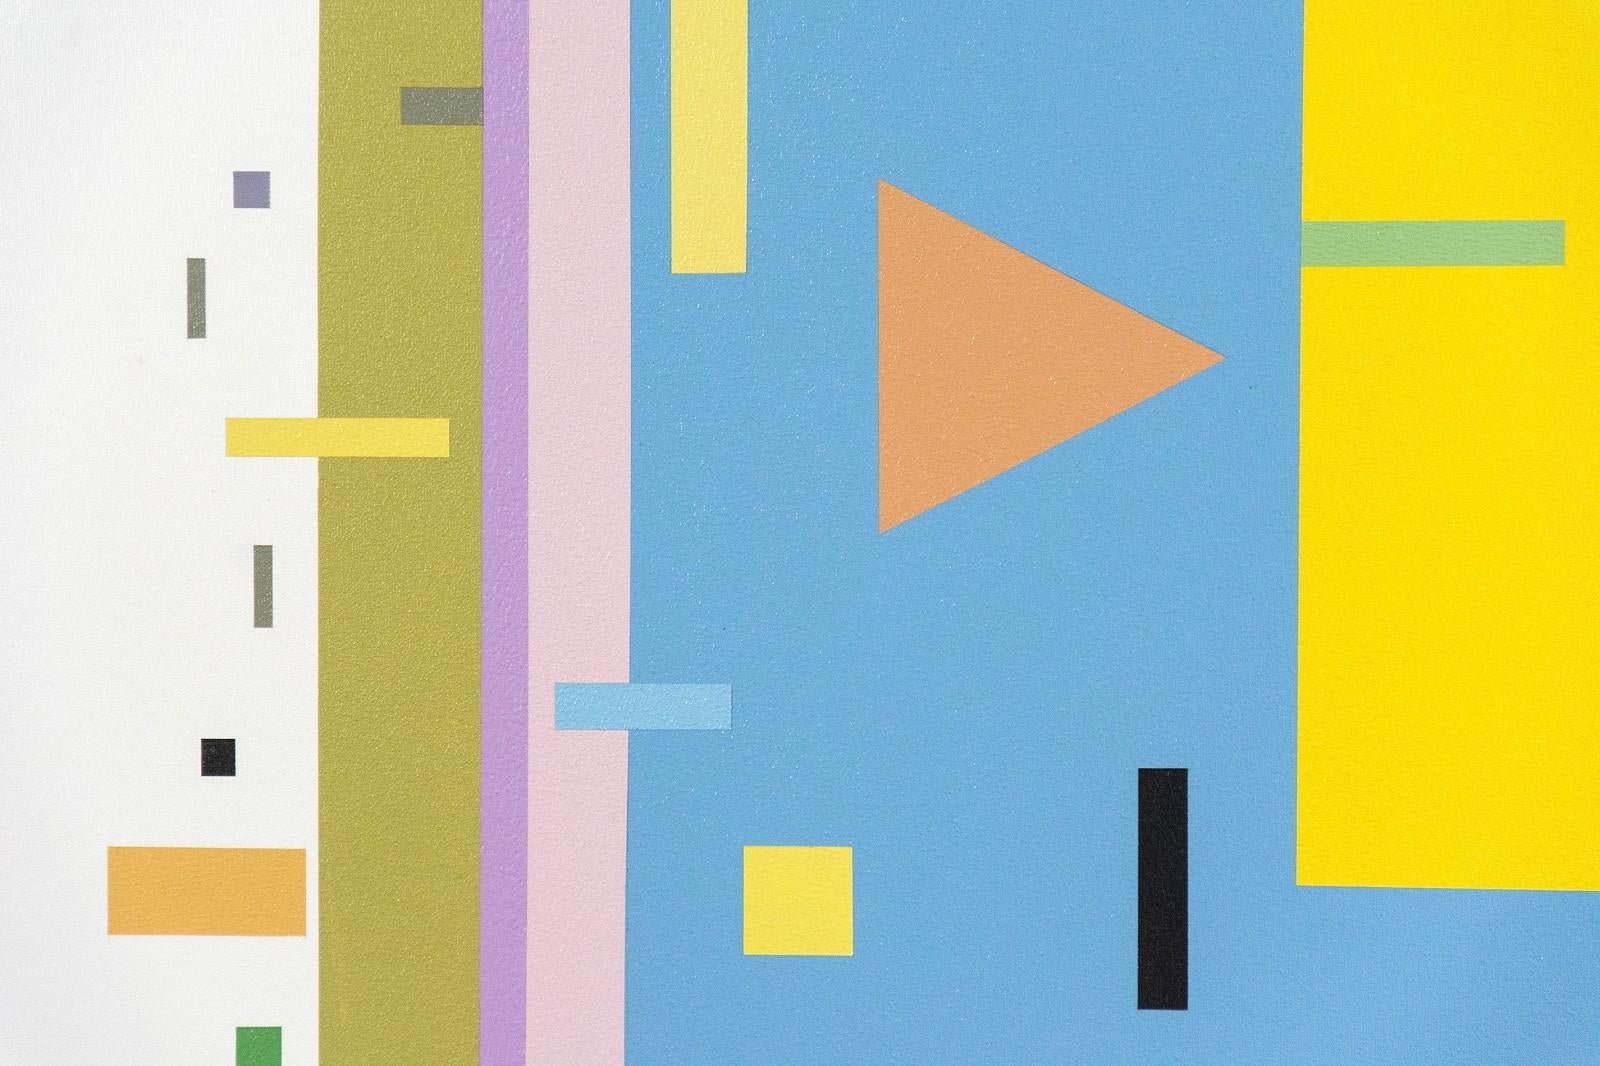 Un staccato de formes géométriques vertes, blanches et orange illumine un fond jaune et bleu dans cette composition animée de Burton Kramer. À l'instar du peintre européen du XXe siècle Wassily Kandinsky, célèbre pour ses expériences de synesthésie